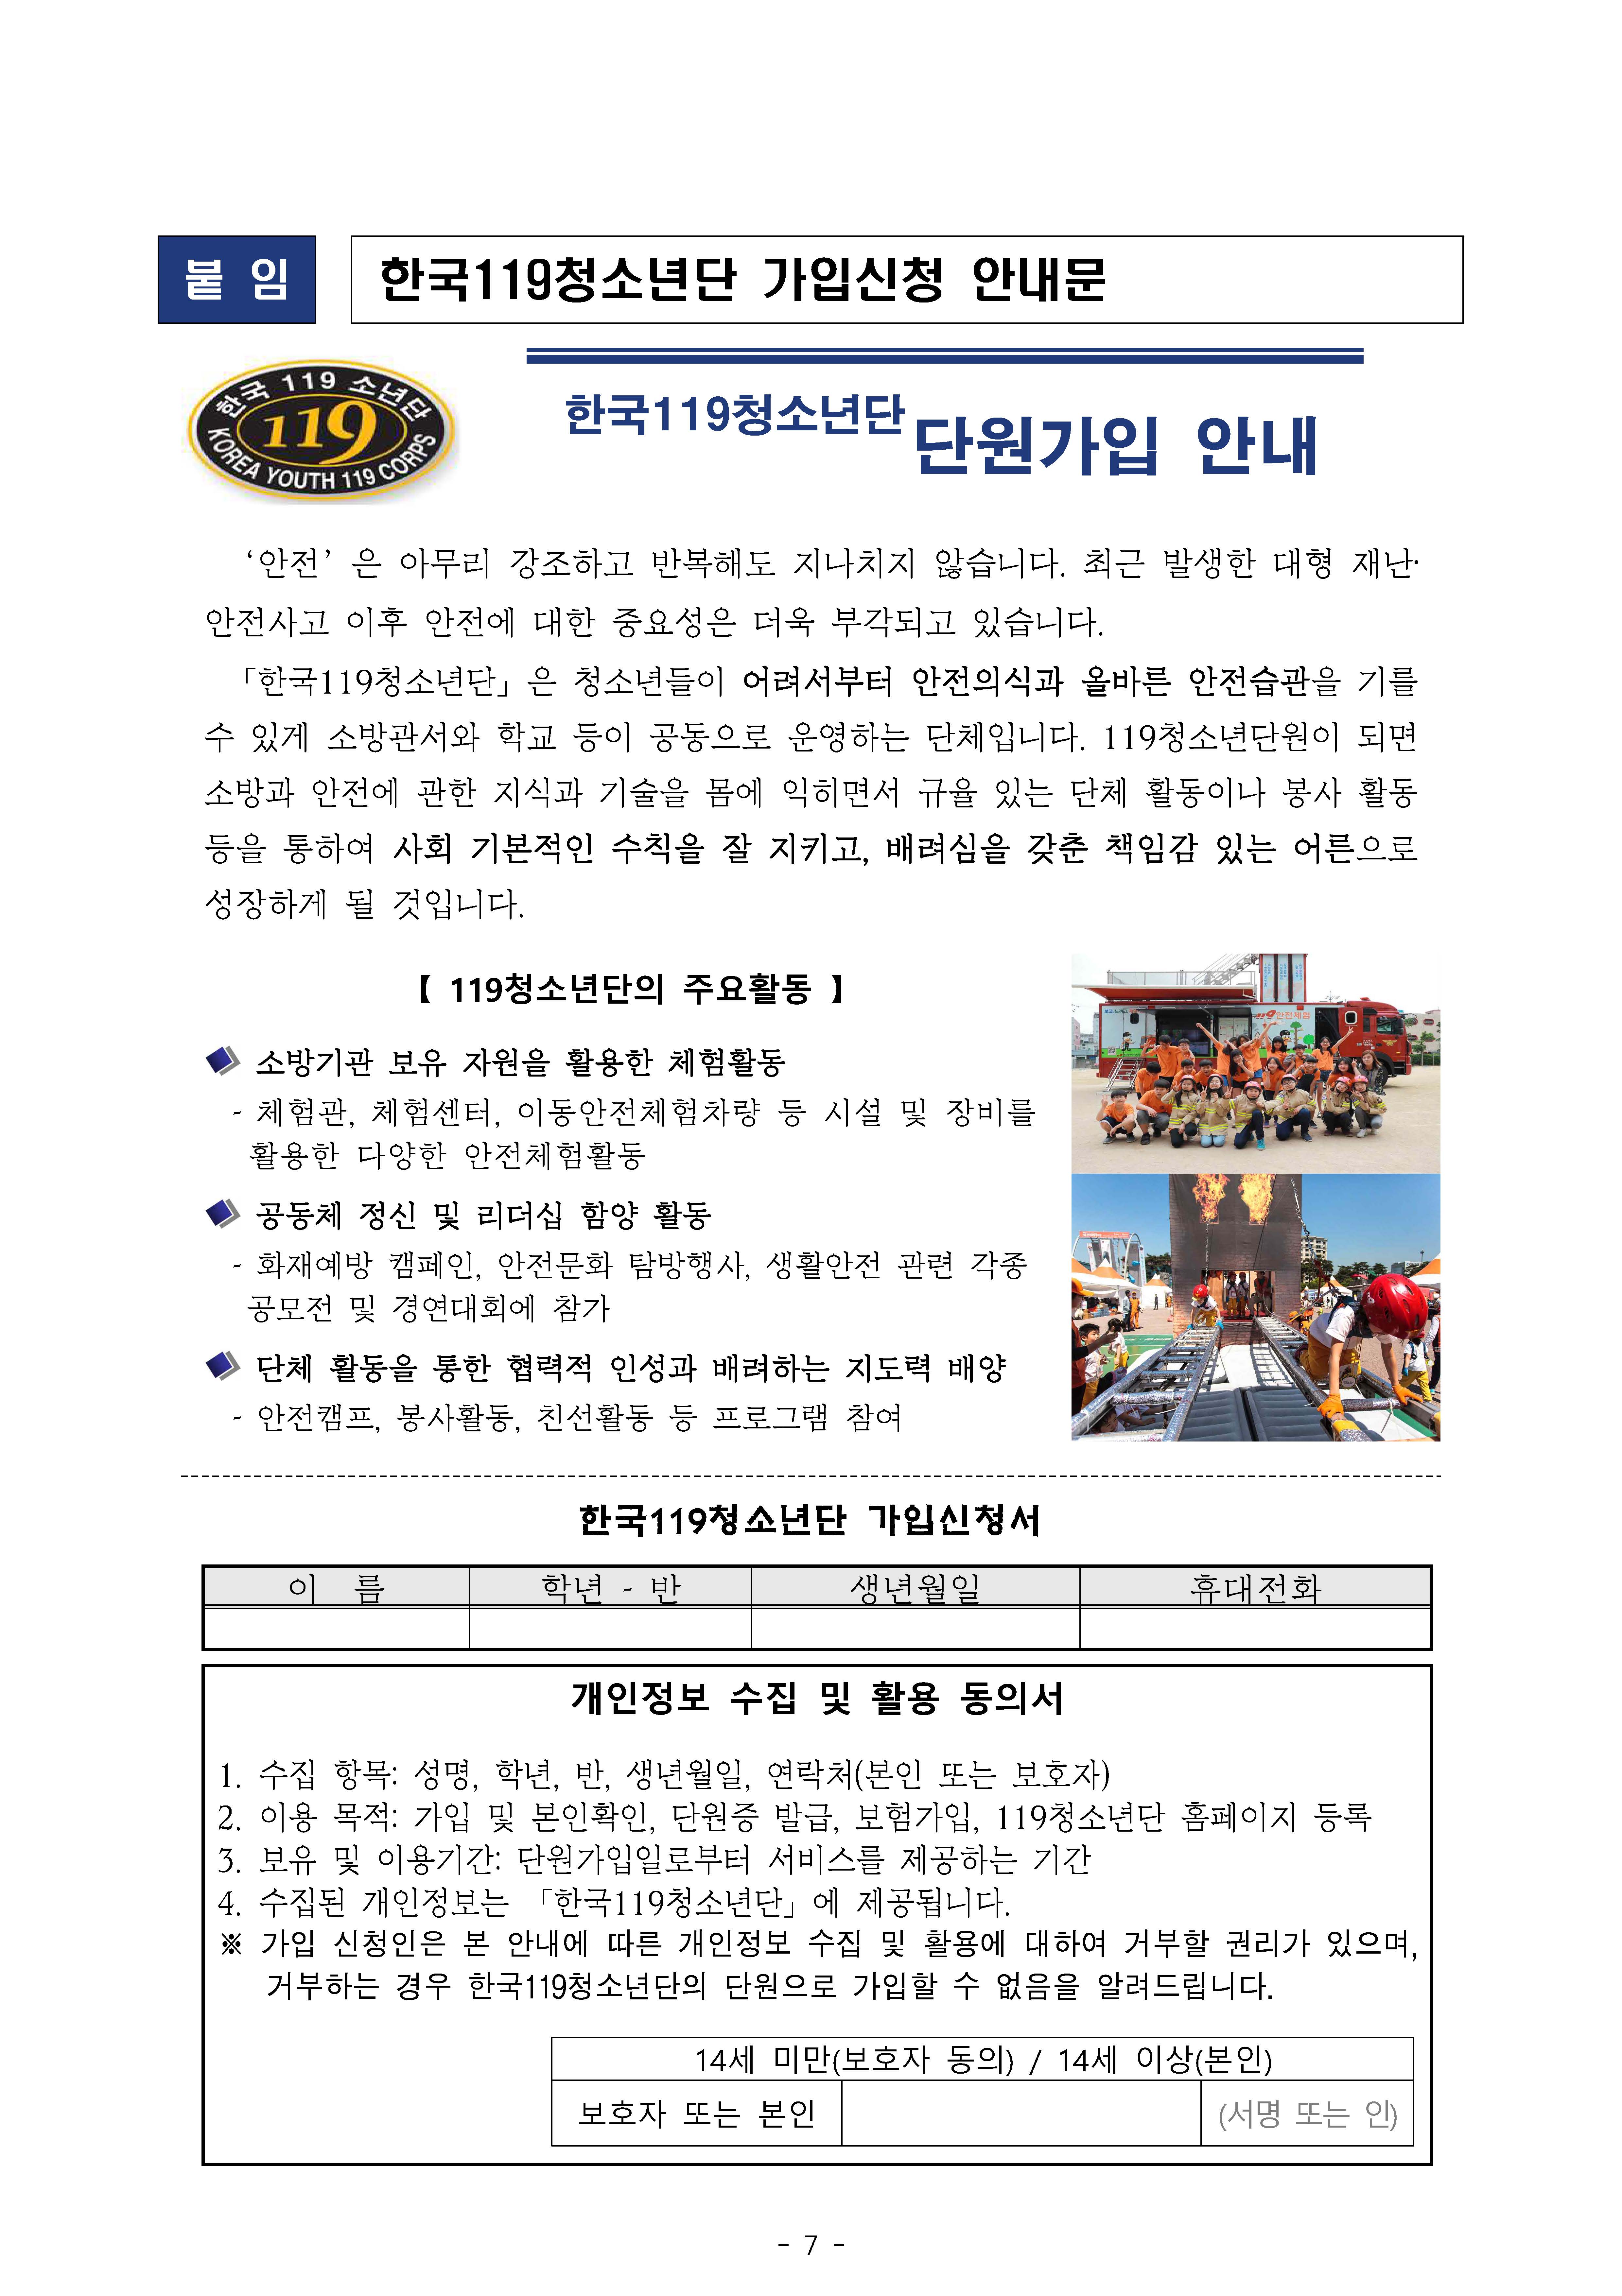 첨부이미지 : 페이지 포함 파일 - 2024년 한국119청소년단 운영계획 및 모집 안내.jpg